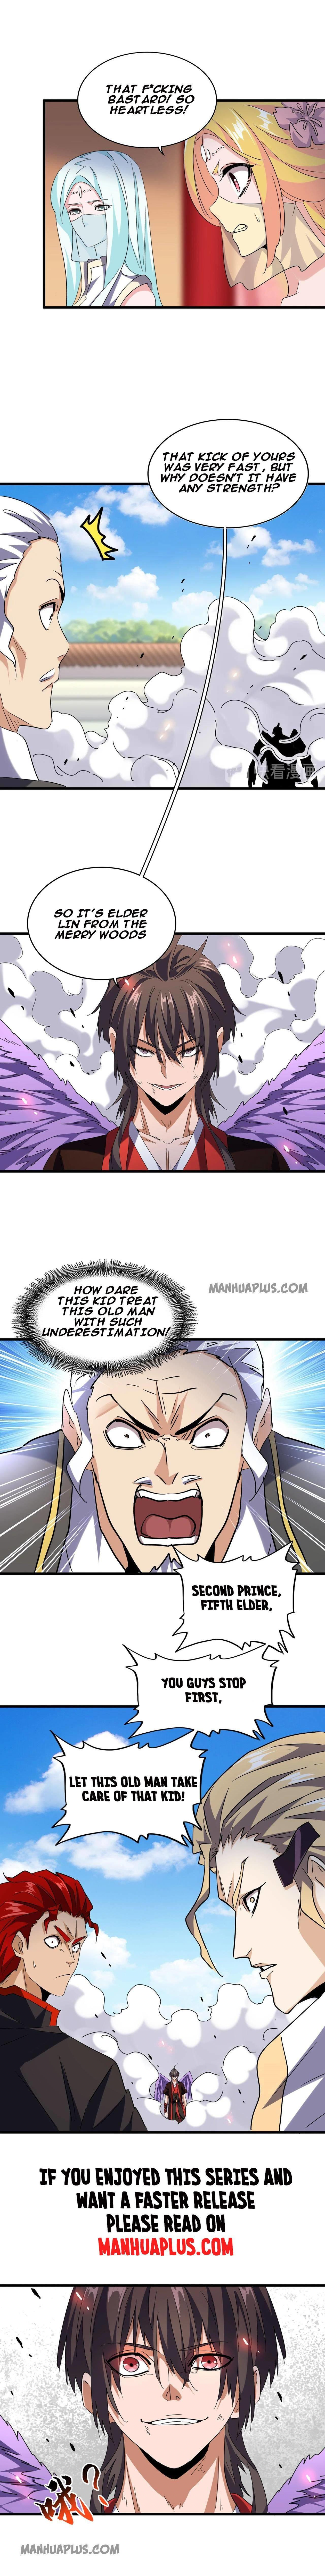 Magic Emperor Chapter 188 page 10 - Mangakakalot